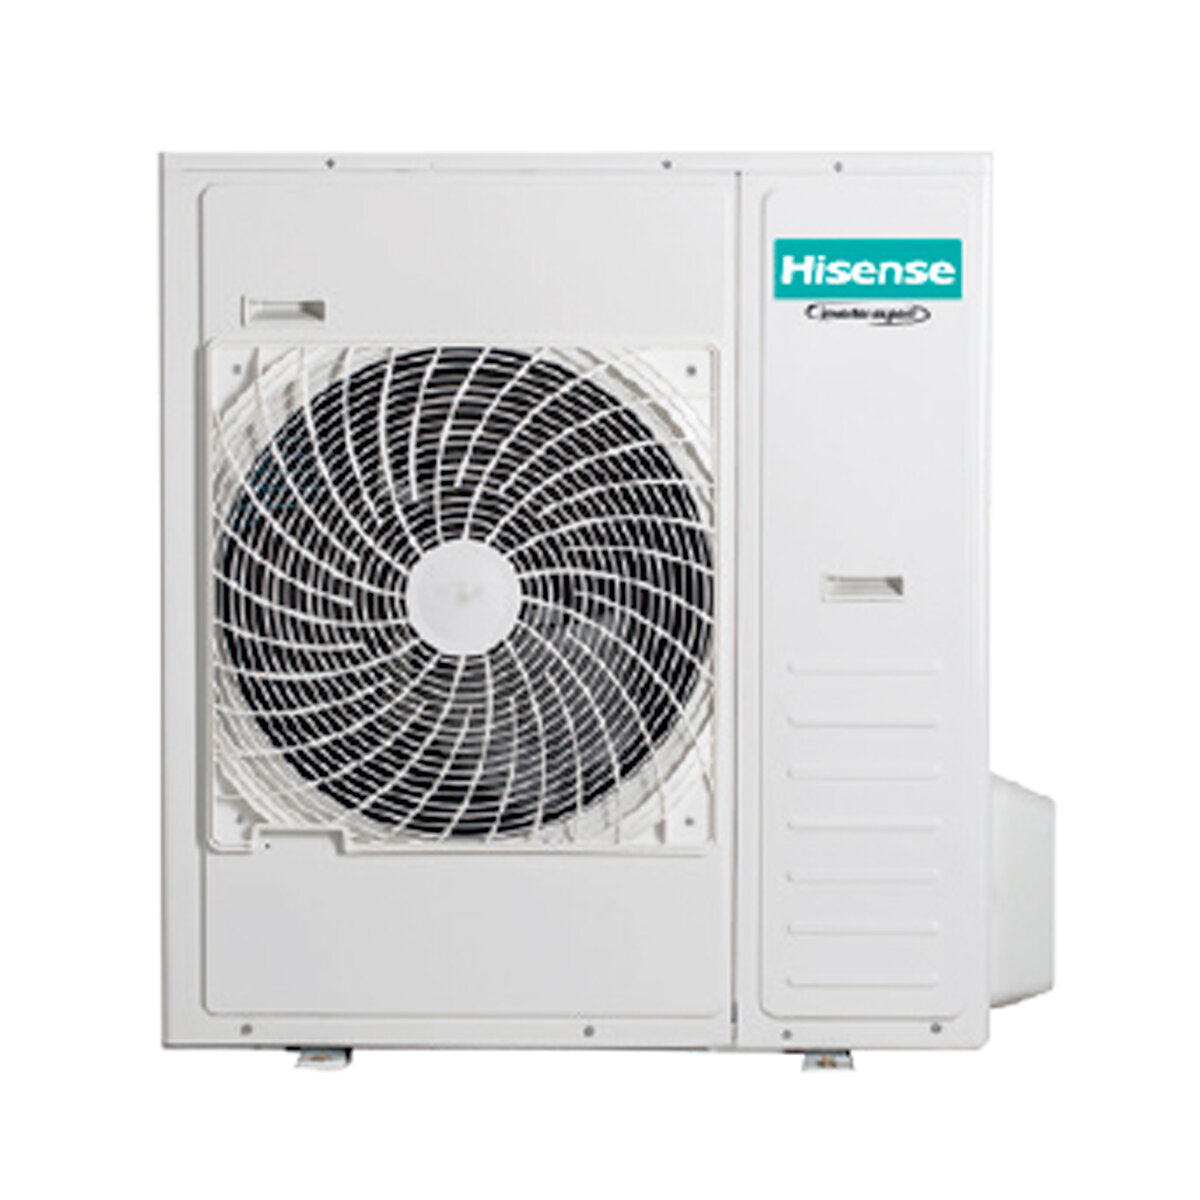 Hisense Hi-Comfort trial climatiseur split 7000+18000+24000 BTU wifi inverter unité extérieure 12,5 kW